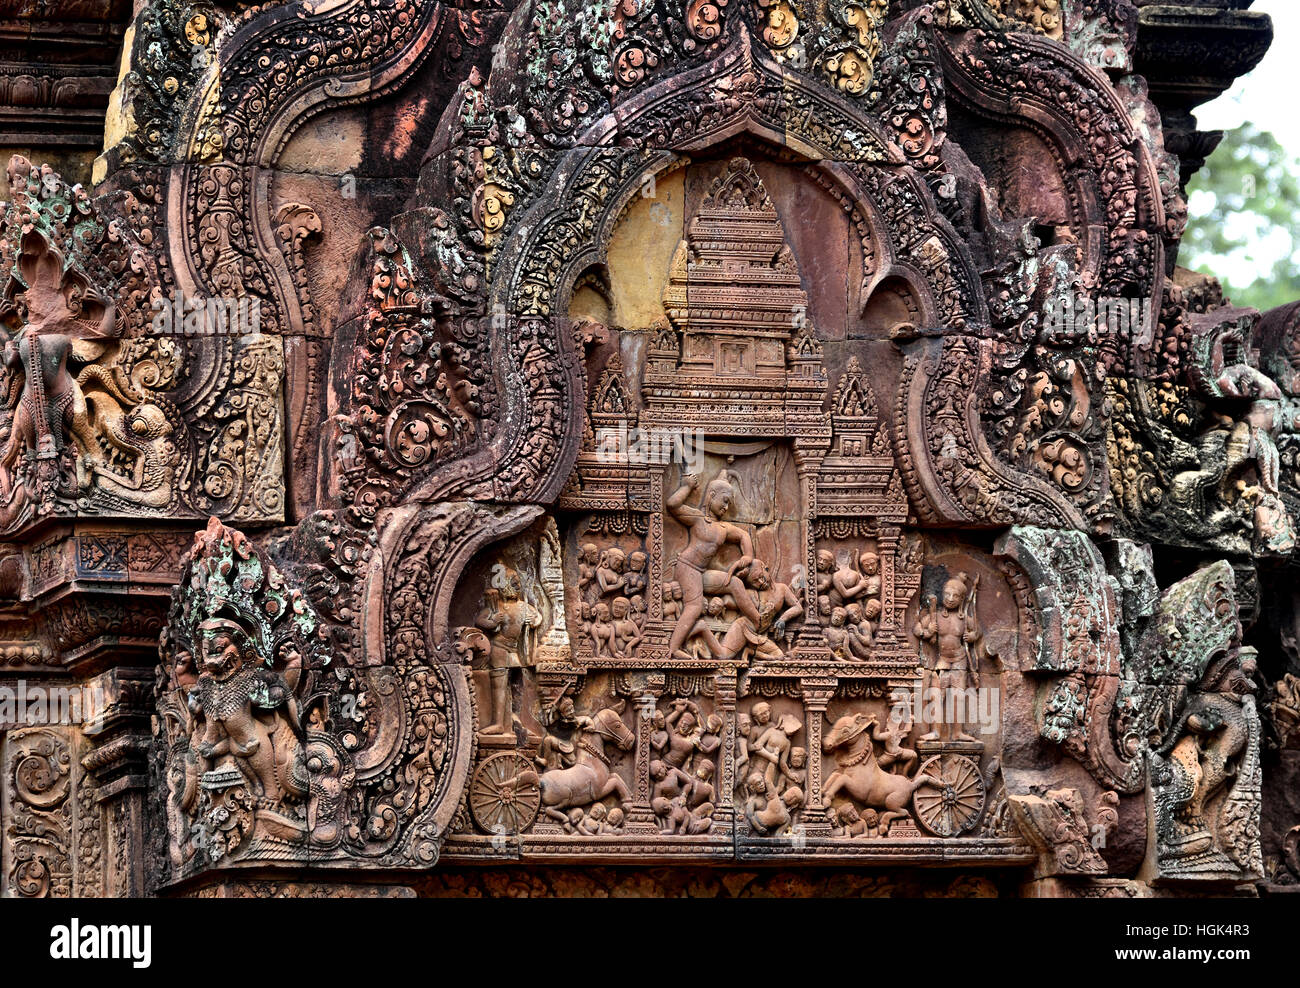 Banteay Srei temple cambodgien Srey - 10ème siècle temple hindou dédié à Shiva. Siem Reap, Cambodge Angkor ( différentes capitales complexe archéologique empire Khmer 9-15ème siècle ) Banque D'Images